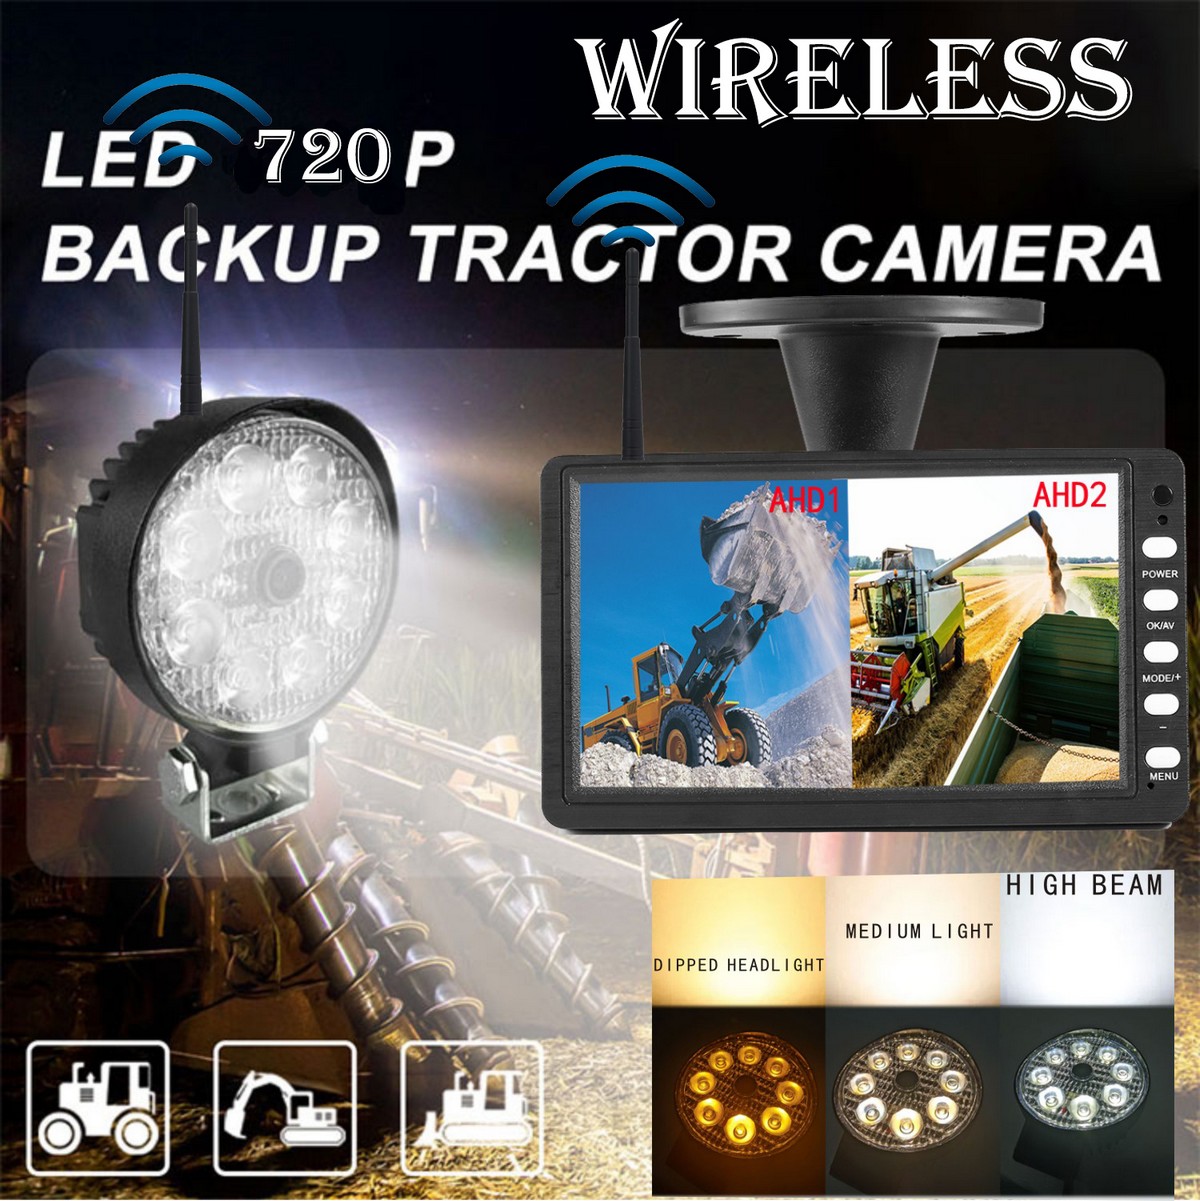 बैकअप सेट - शक्तिशाली सफेद एलईडी लाइट और कई कार्यों के साथ वाईफाई कैमरा